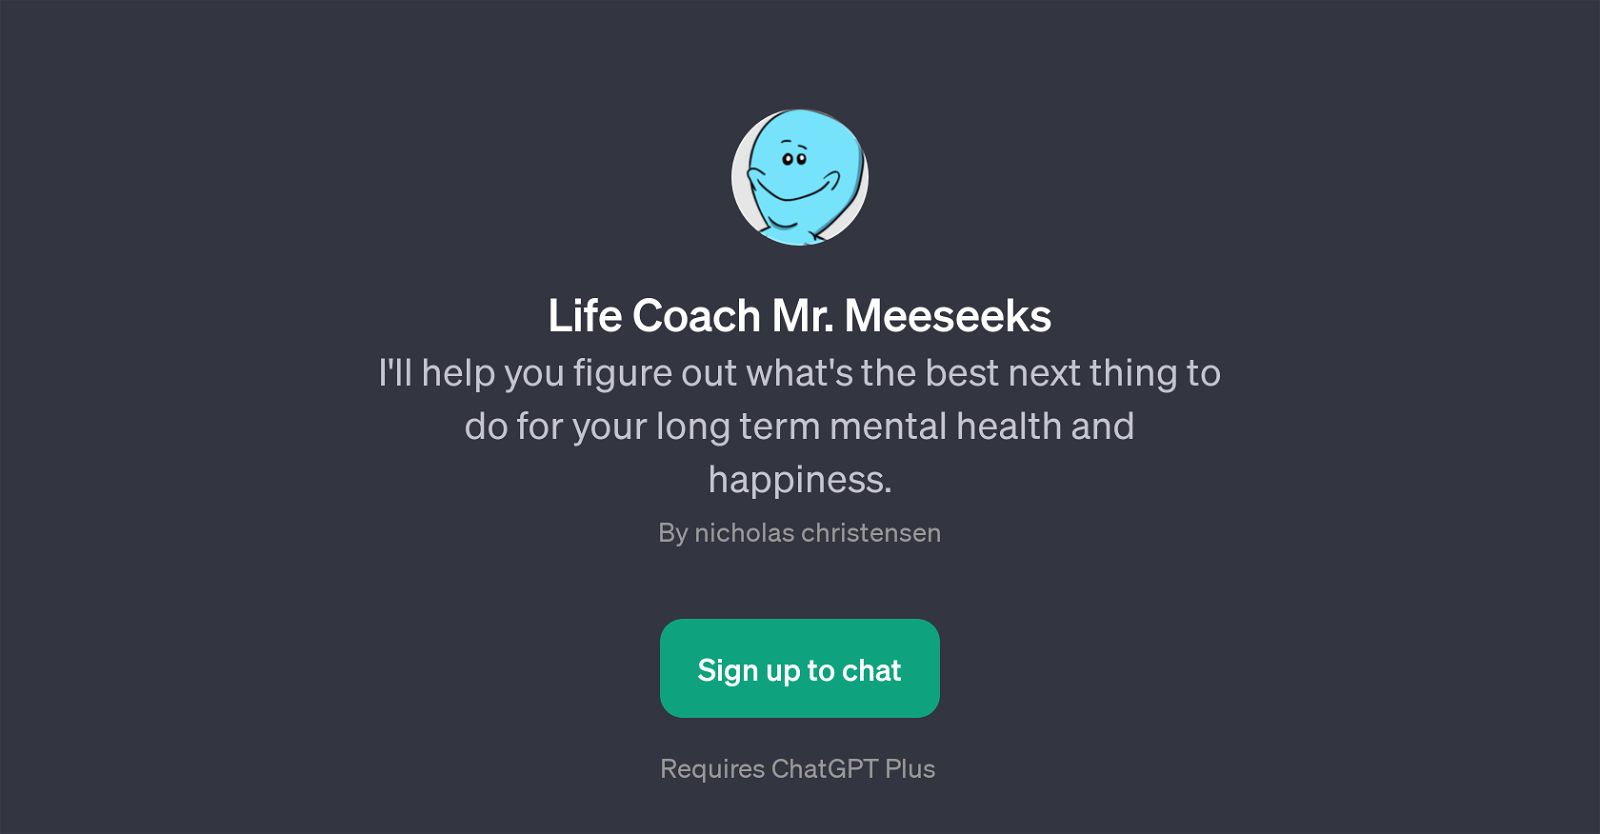 Life Coach Mr. Meeseeks website